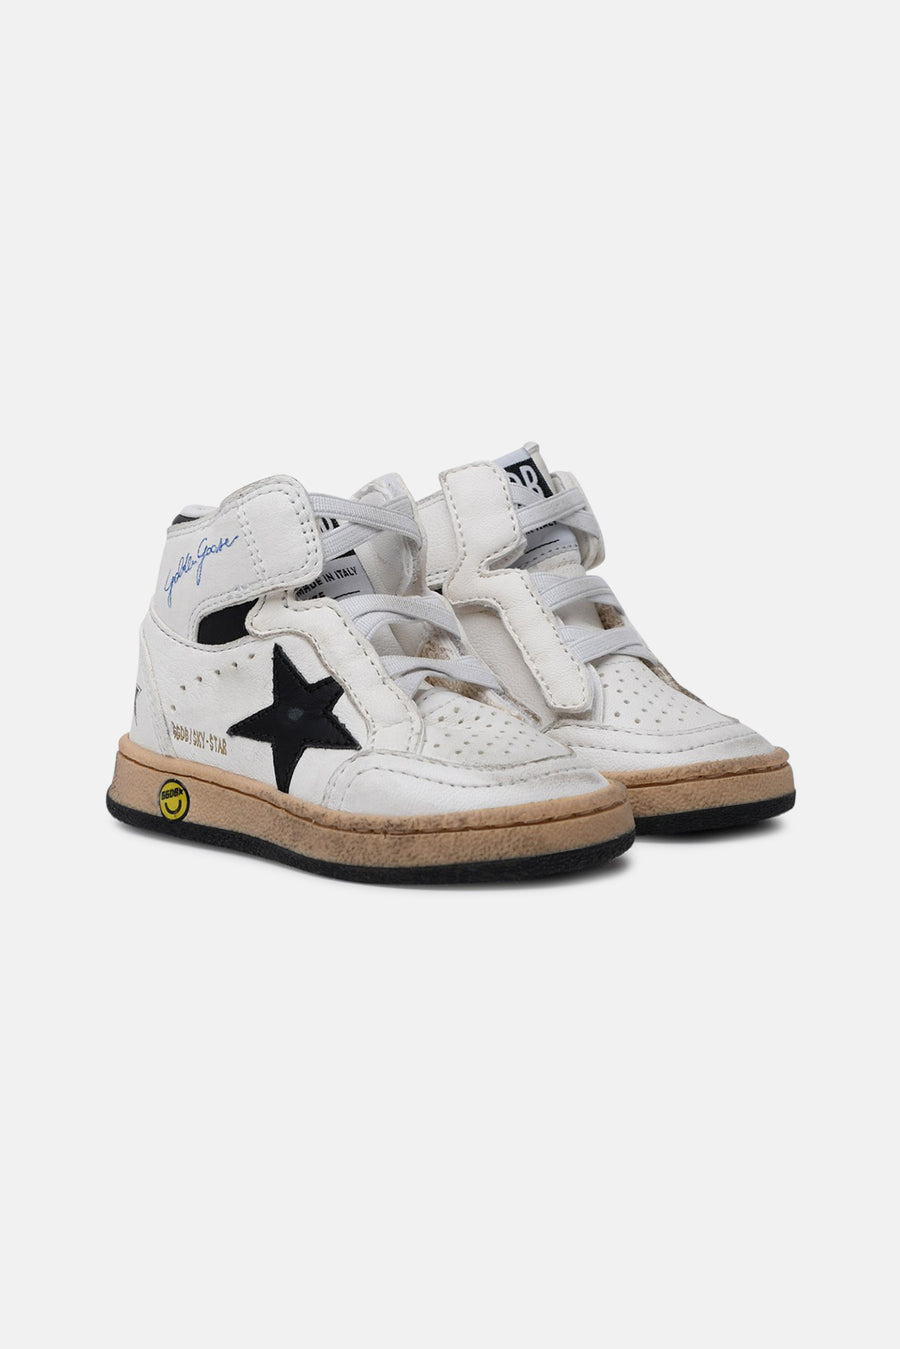 Toddler Sky Star Sneakers White/Black Star - blueandcream